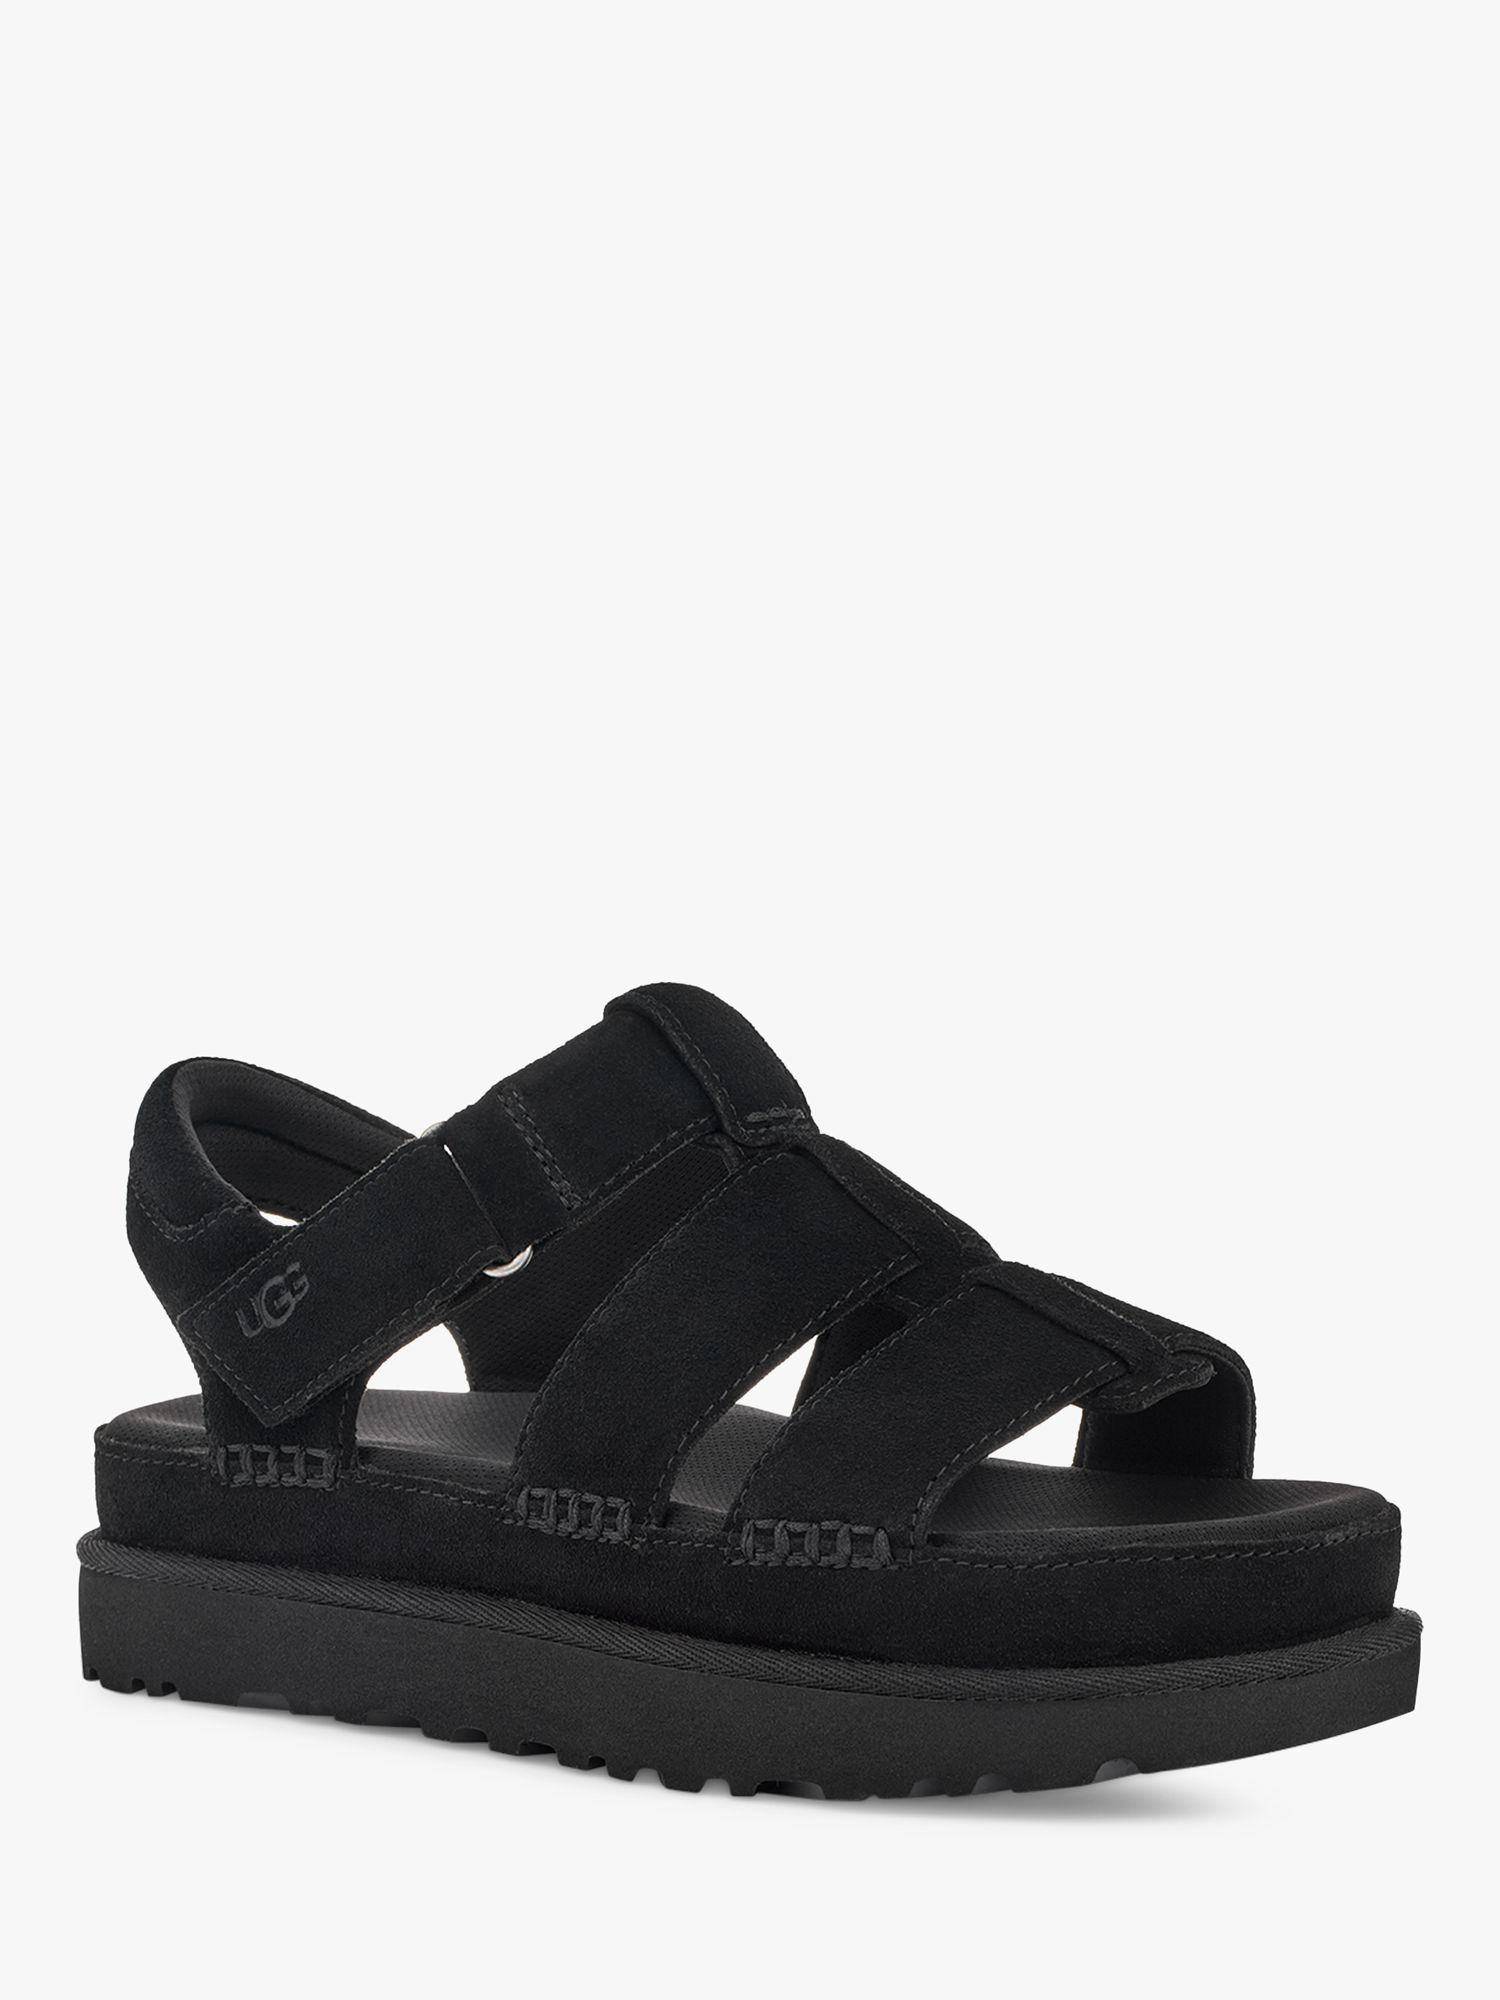 UGG Goldenstar Suede Platform Sandals, Black at John Lewis & Partners